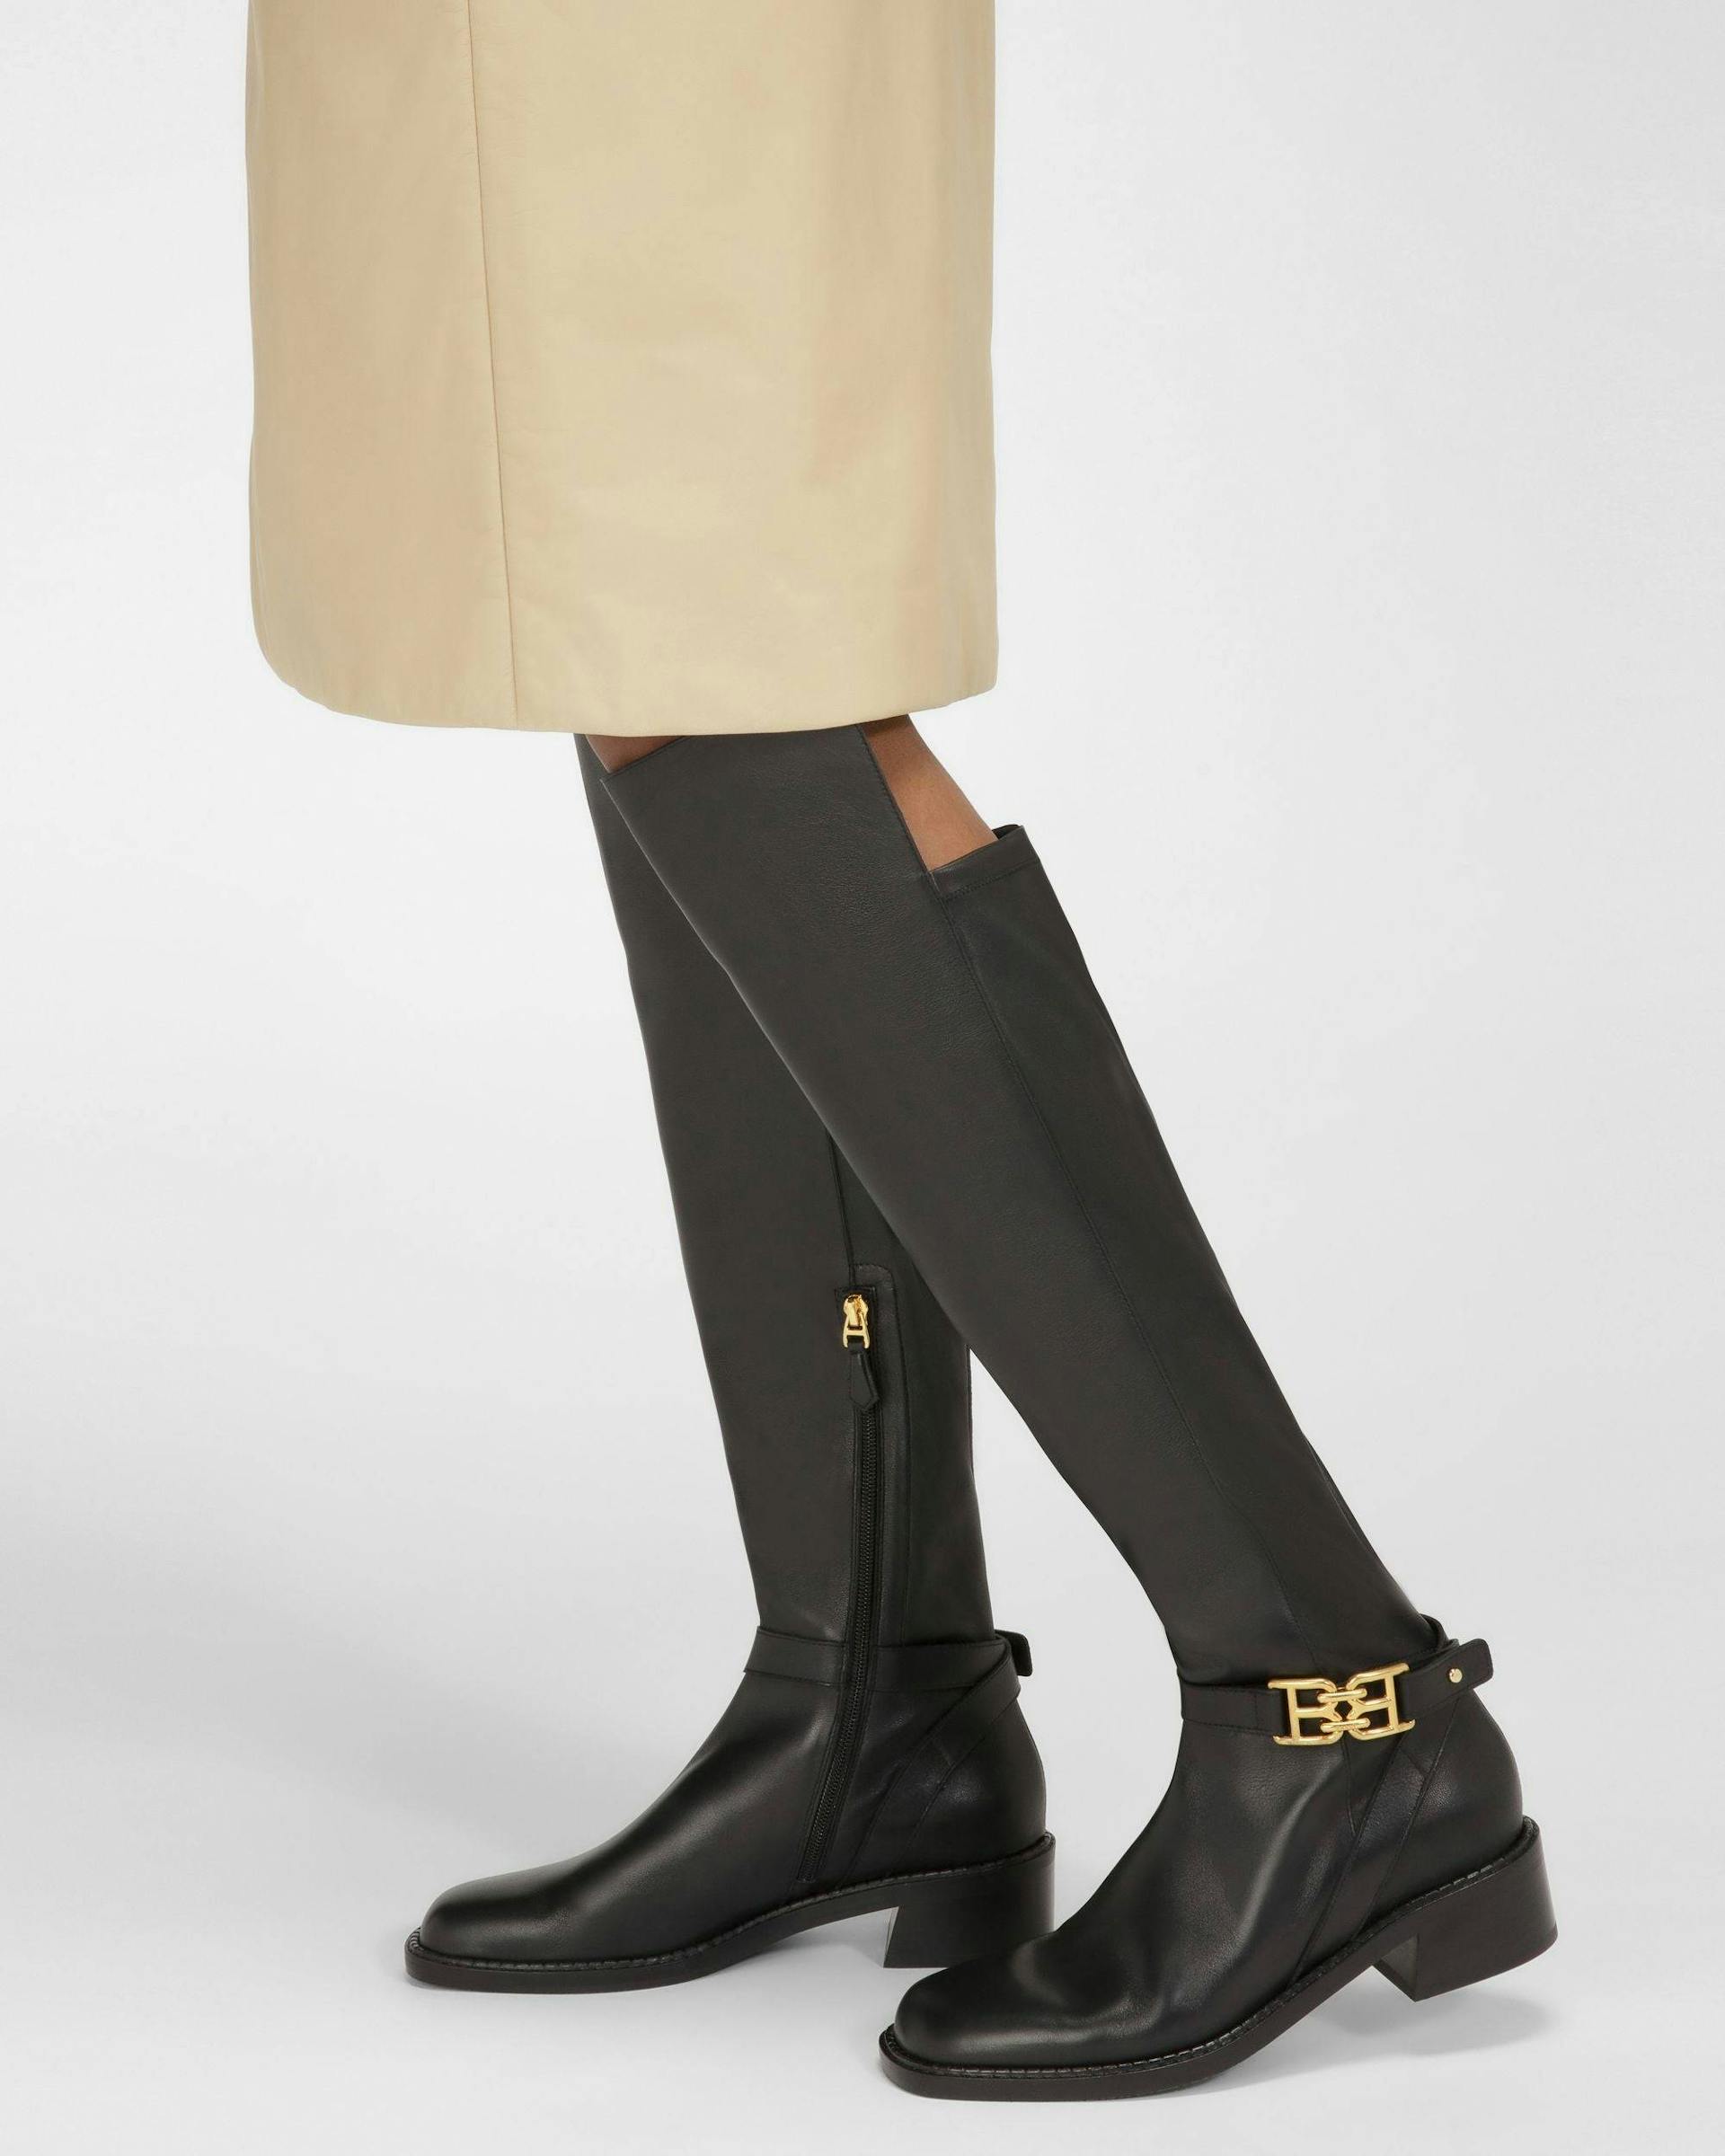 Eloire Leather Long Boots In Black - Women's - Bally - 06